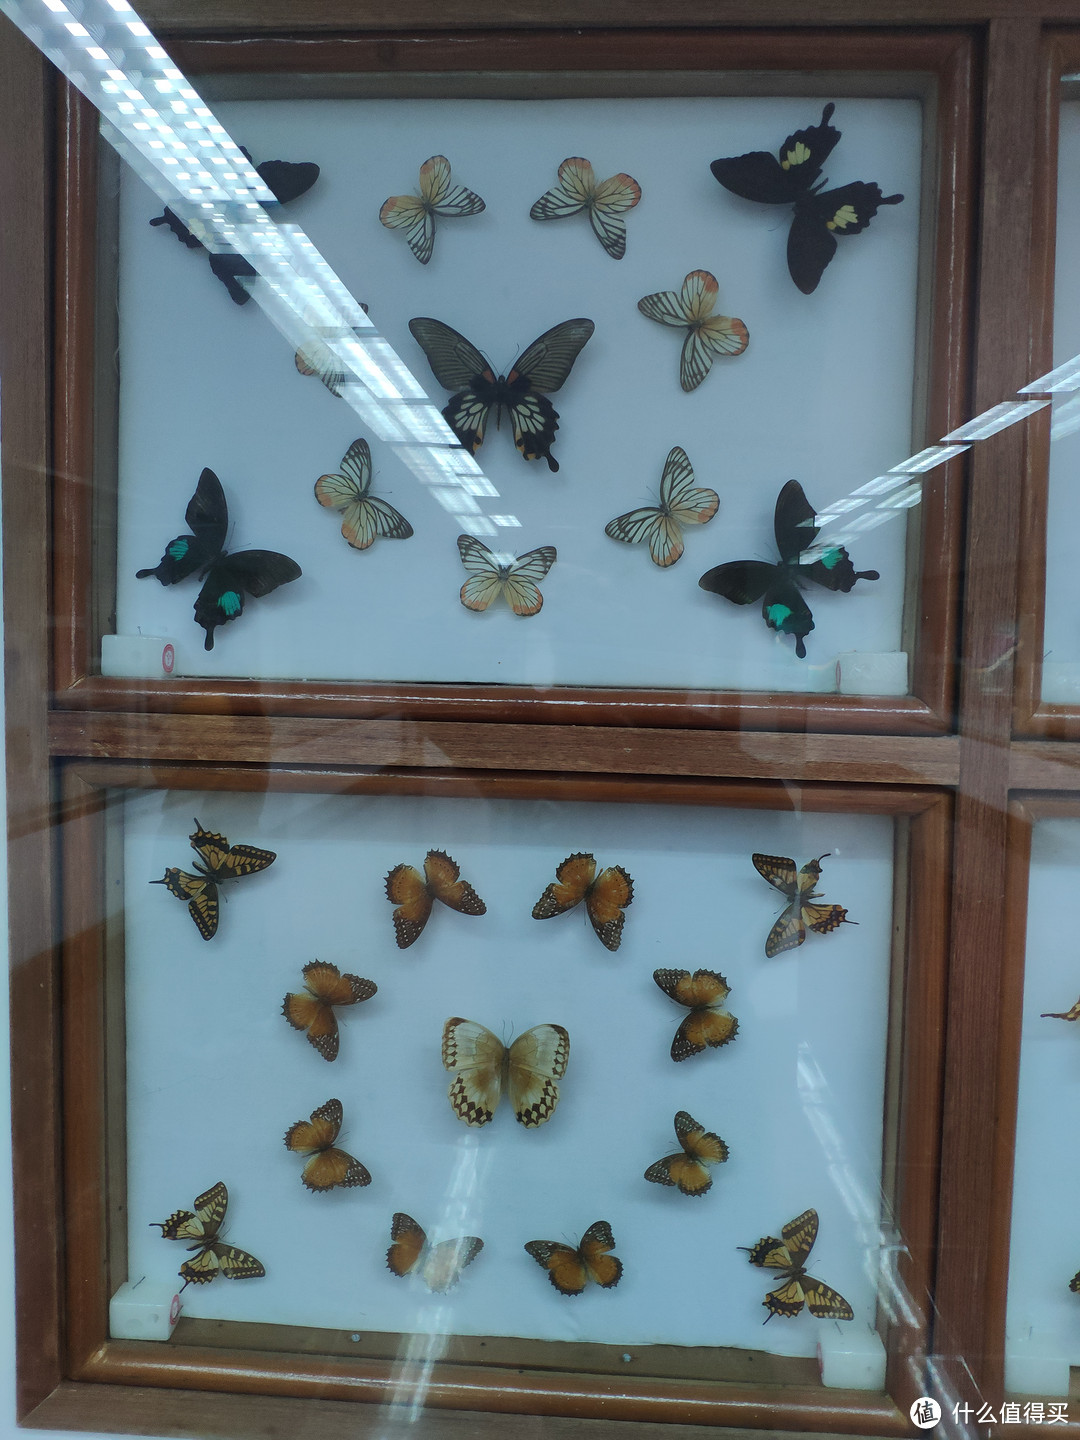 大熊猫基地还有个蝴蝶展，上千种蝴蝶标本，也可以参观一下。